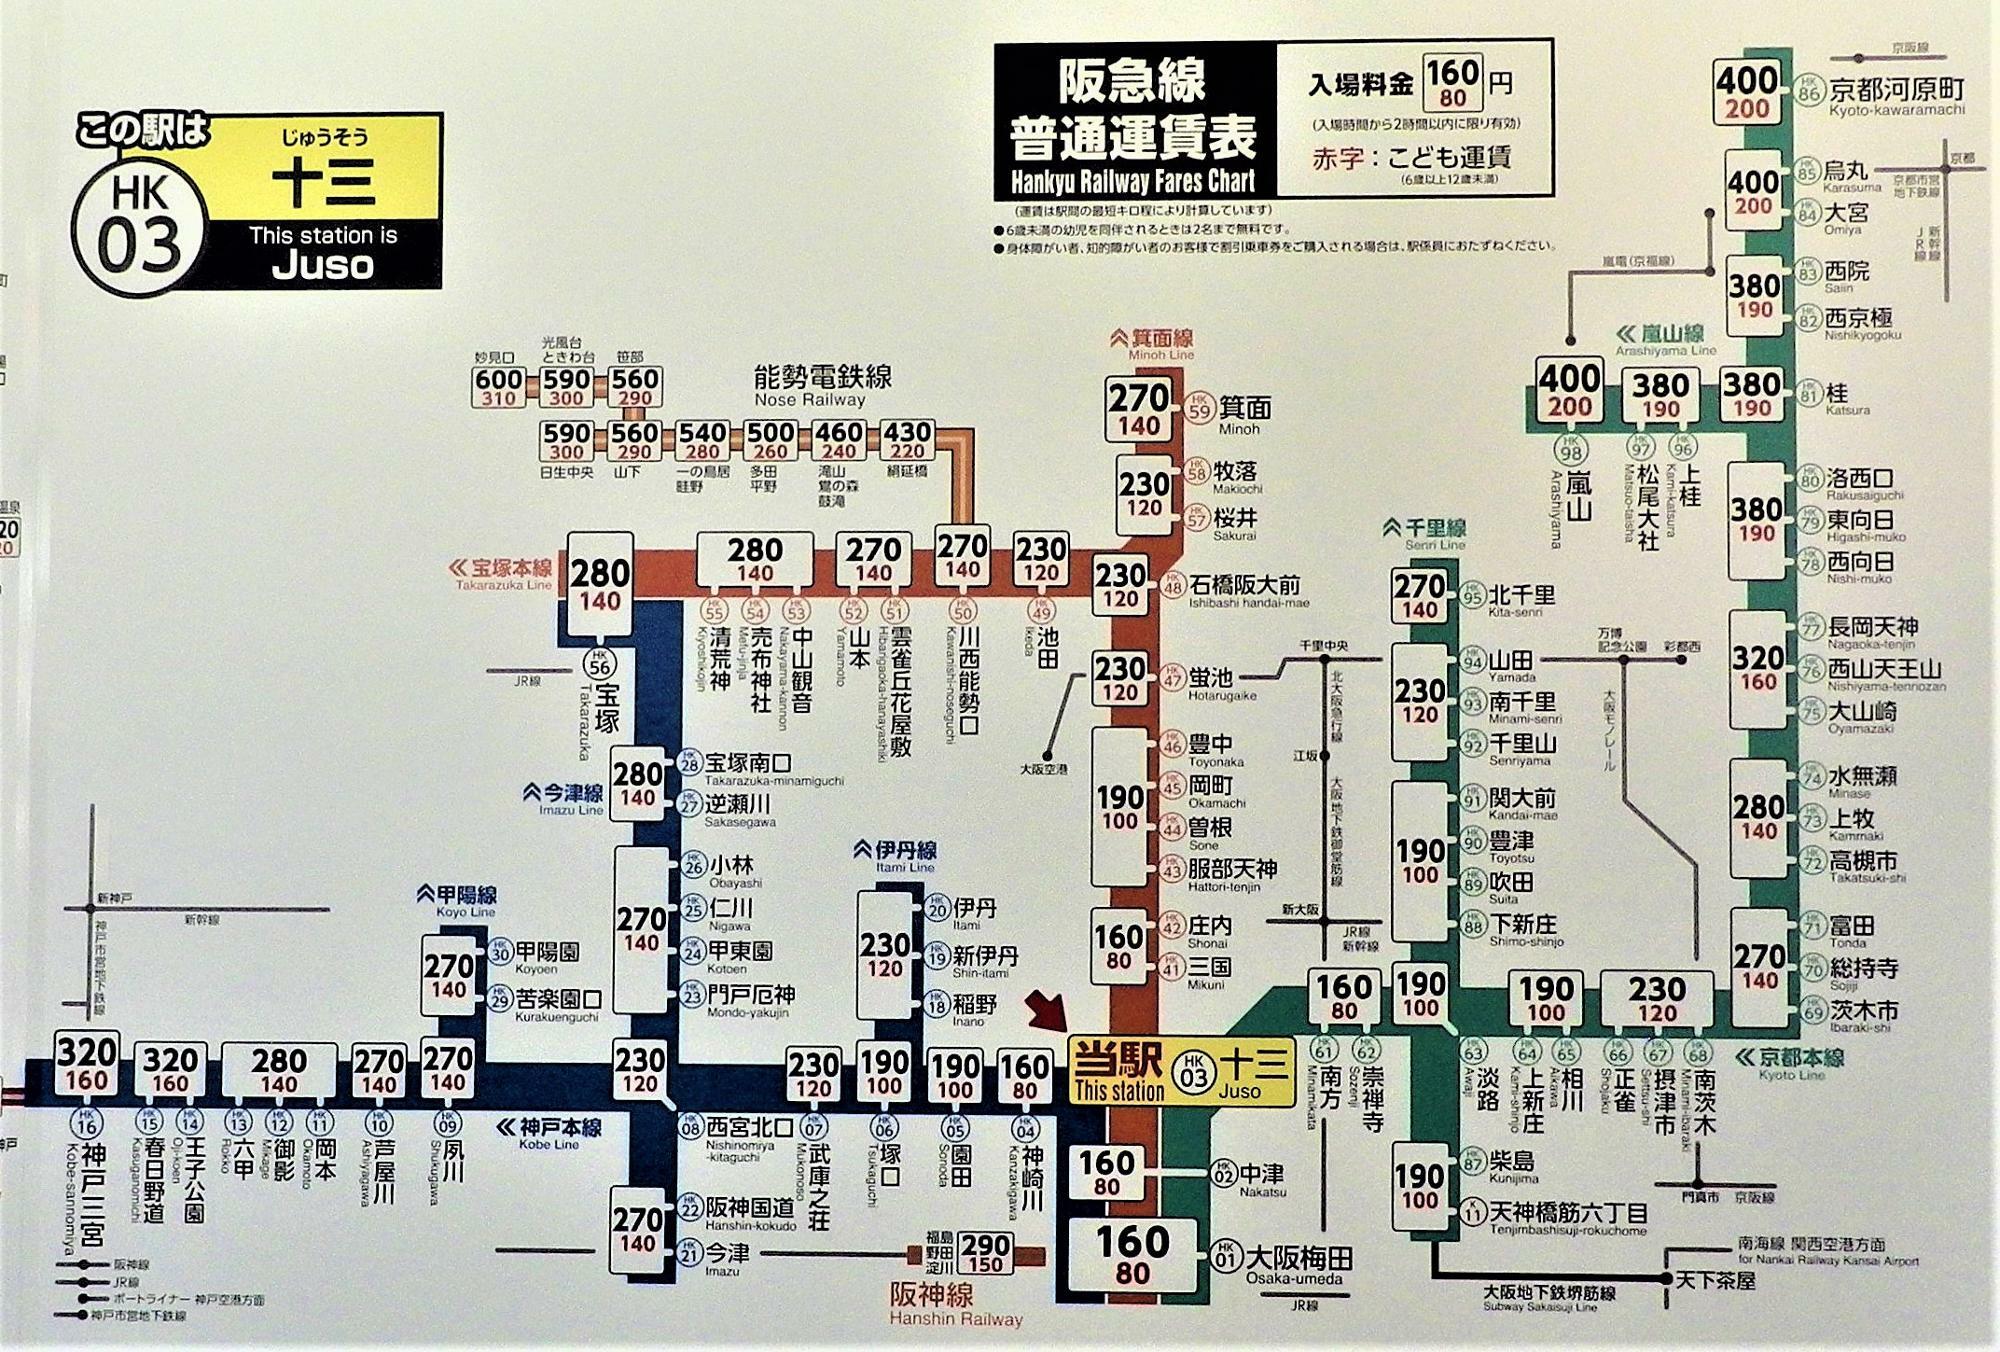 一駅で結構変わる運賃。十三⇒神崎川は160円(現在)ですが、一駅先の園田では190円(現在)となっています。